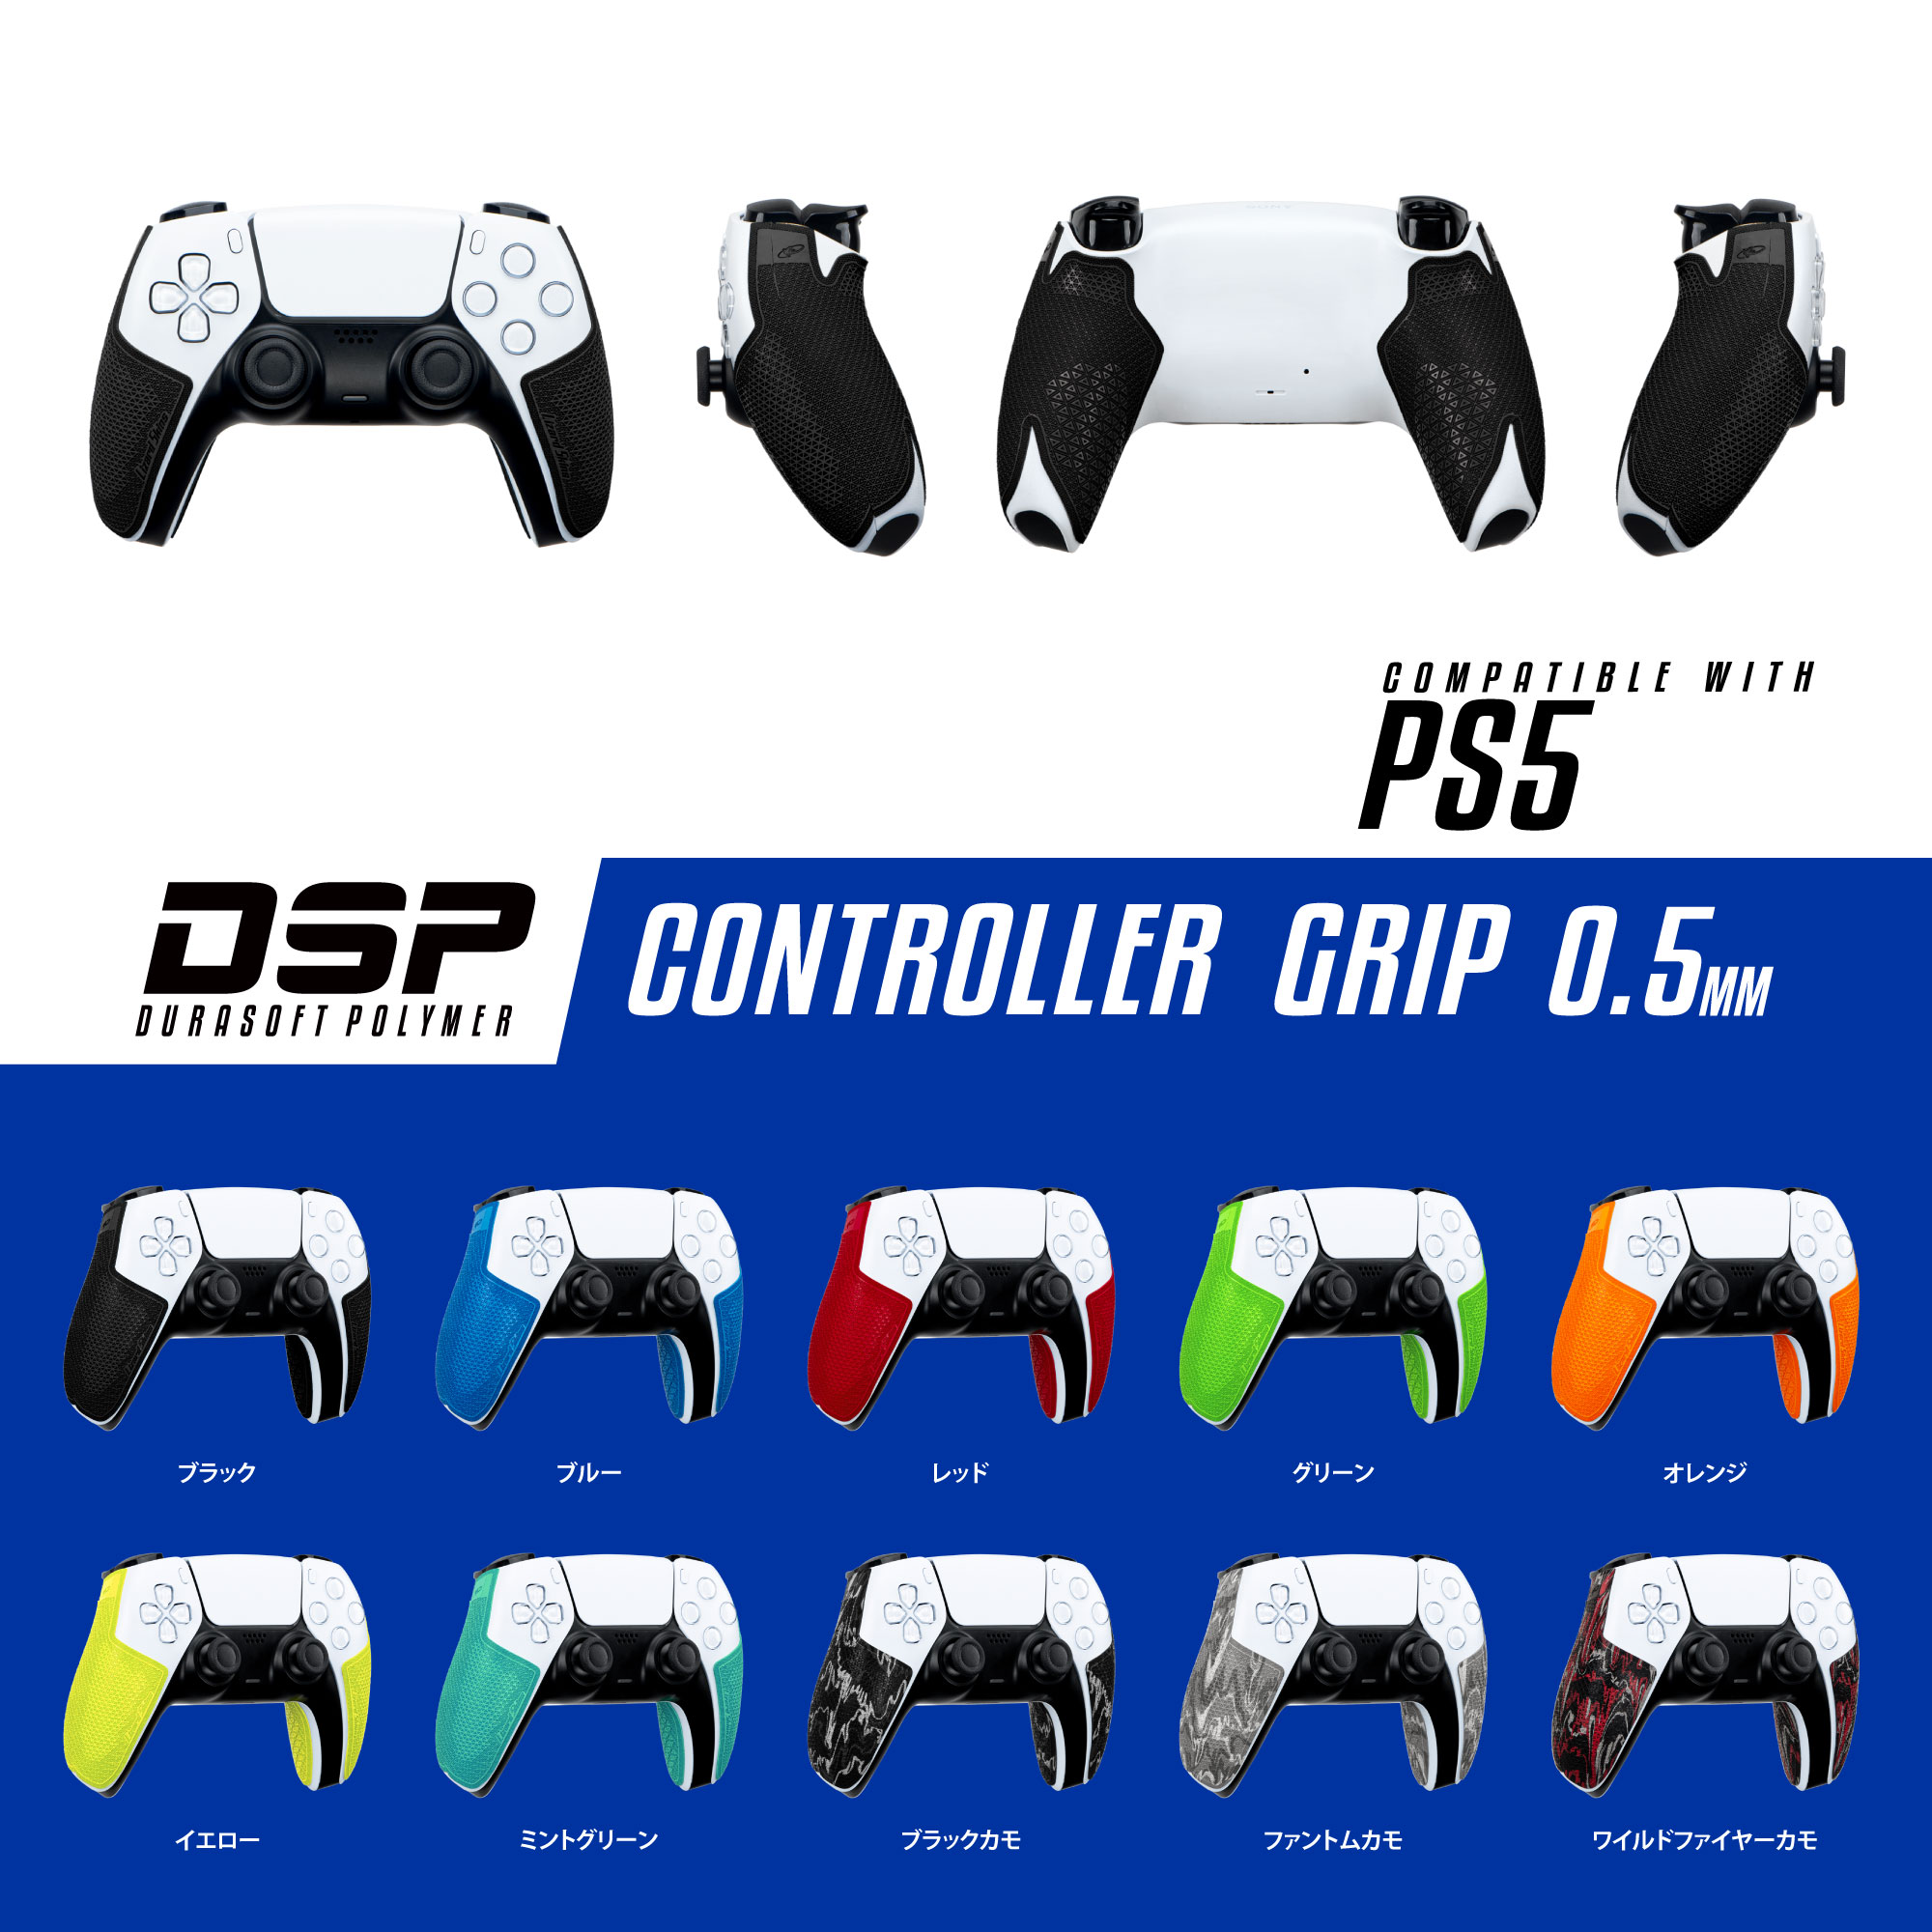 売り込み PS5 コントローラー用 グリップ 黒 GTS 6個入り 並行輸入品 discoversvg.com